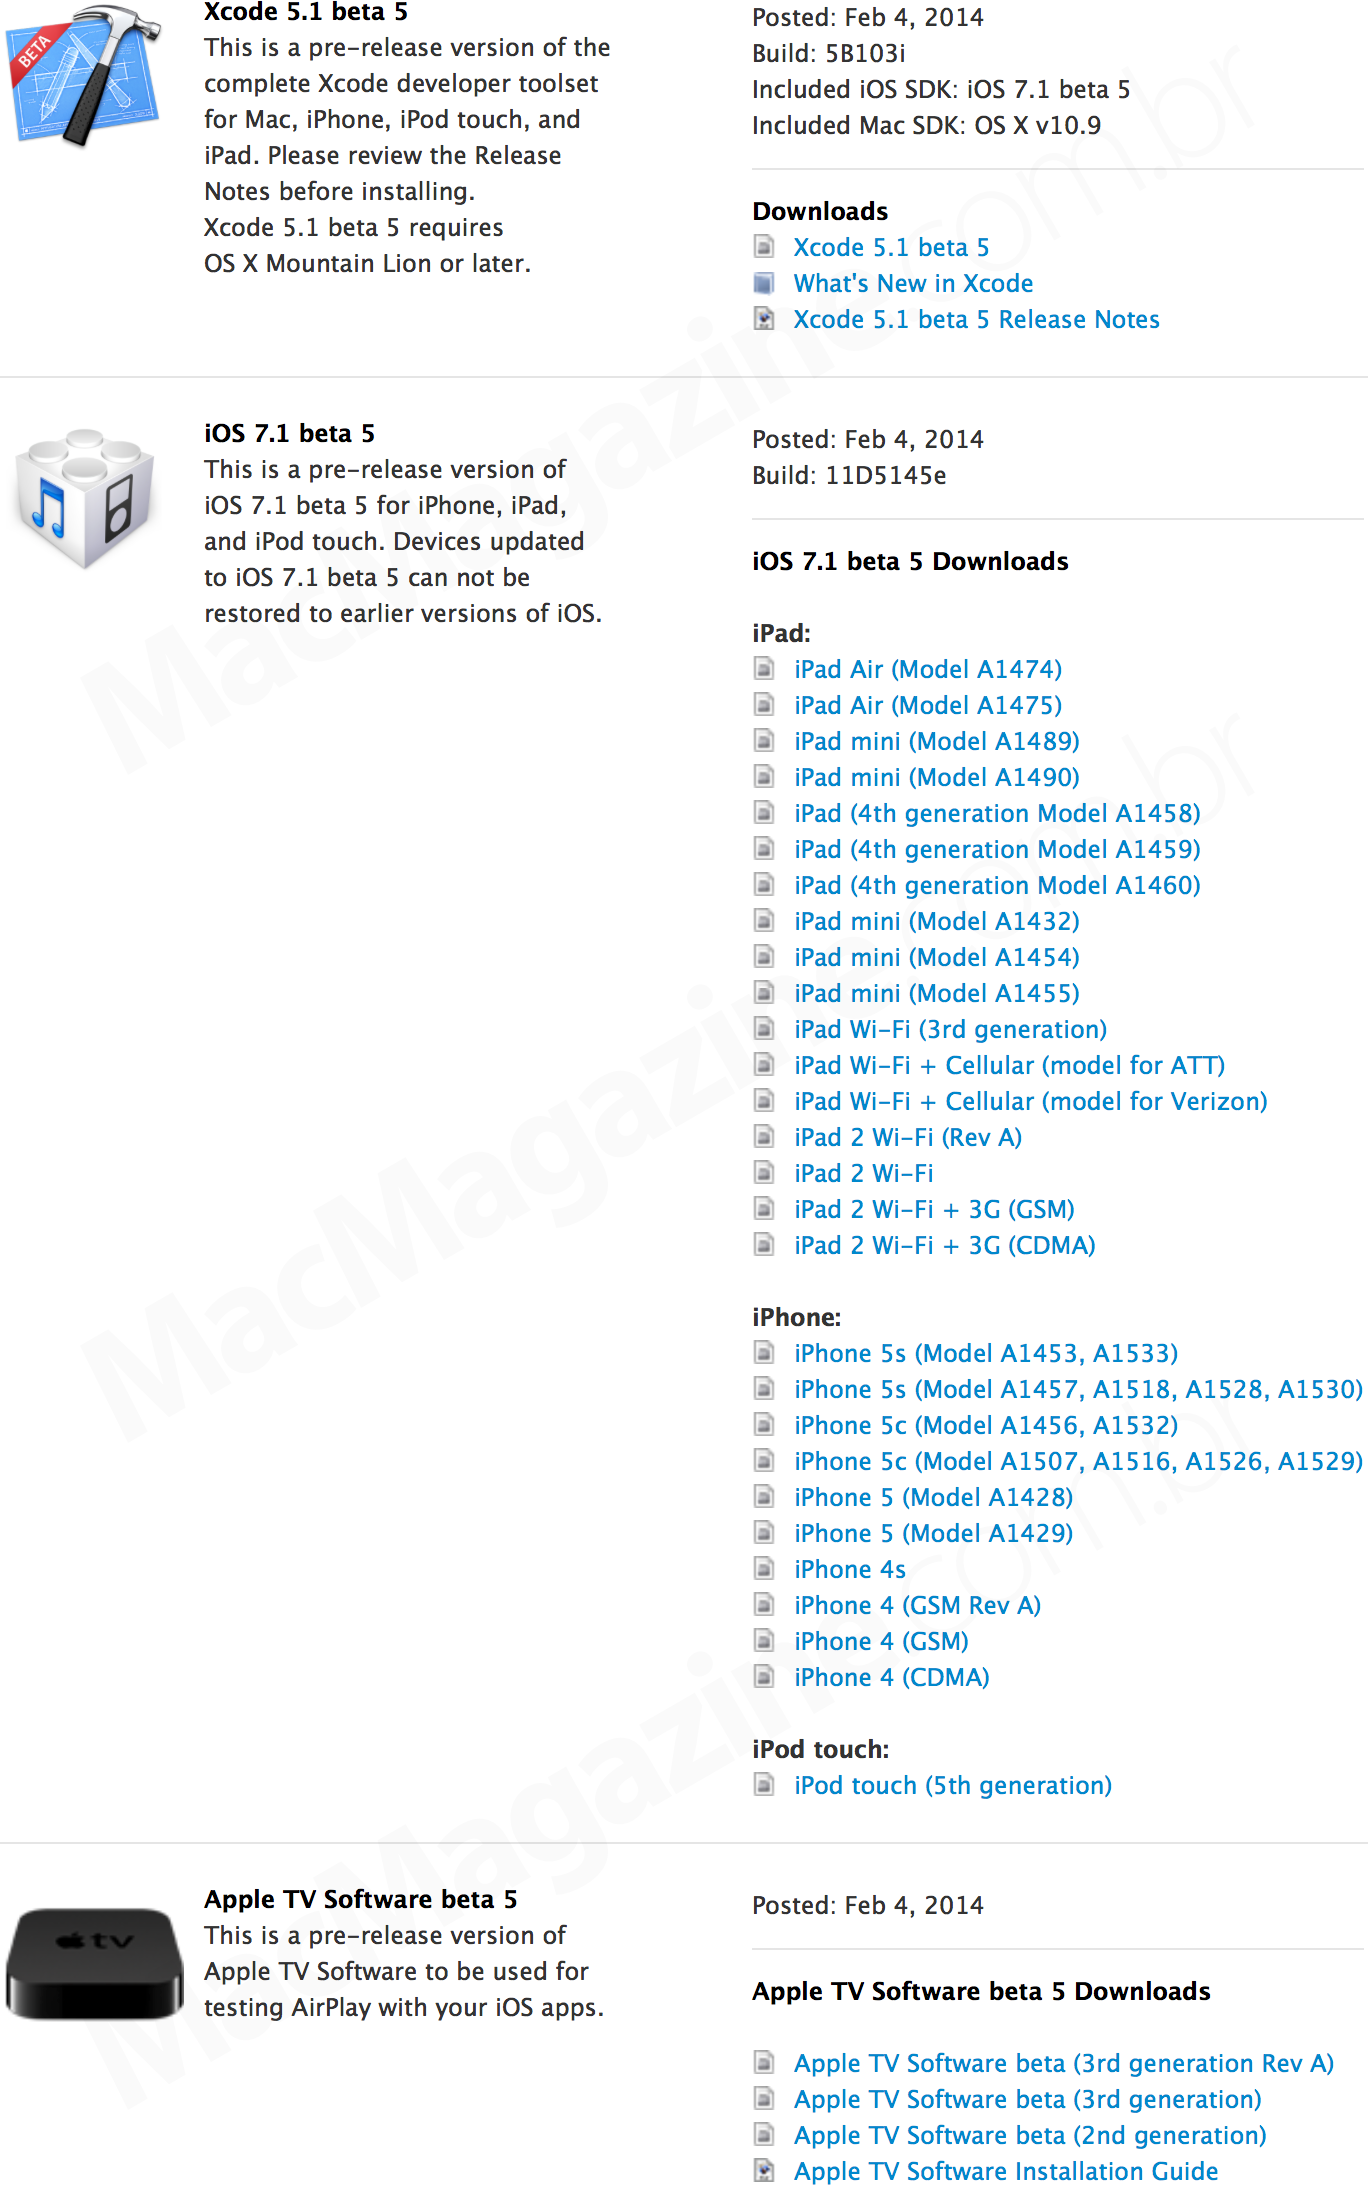 Versões betas (iOS 7.1, Xcode 5 e Apple TV Software)